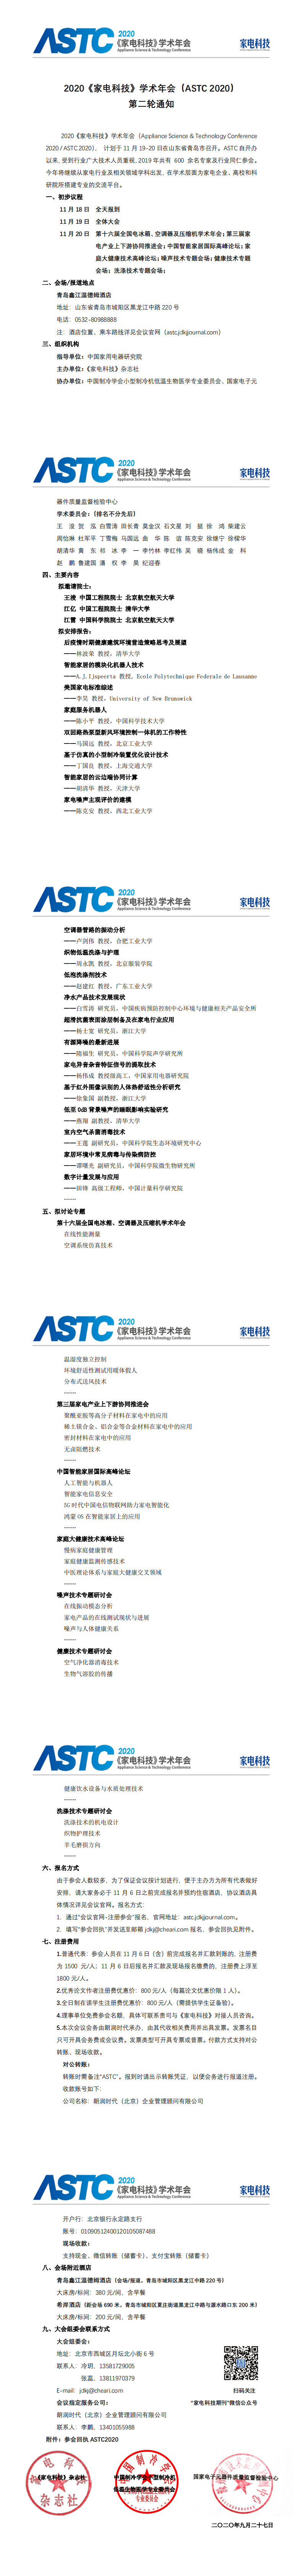 2020《家电科技》学术年会（ASTC 2020） 第二轮通知5.0_0.png